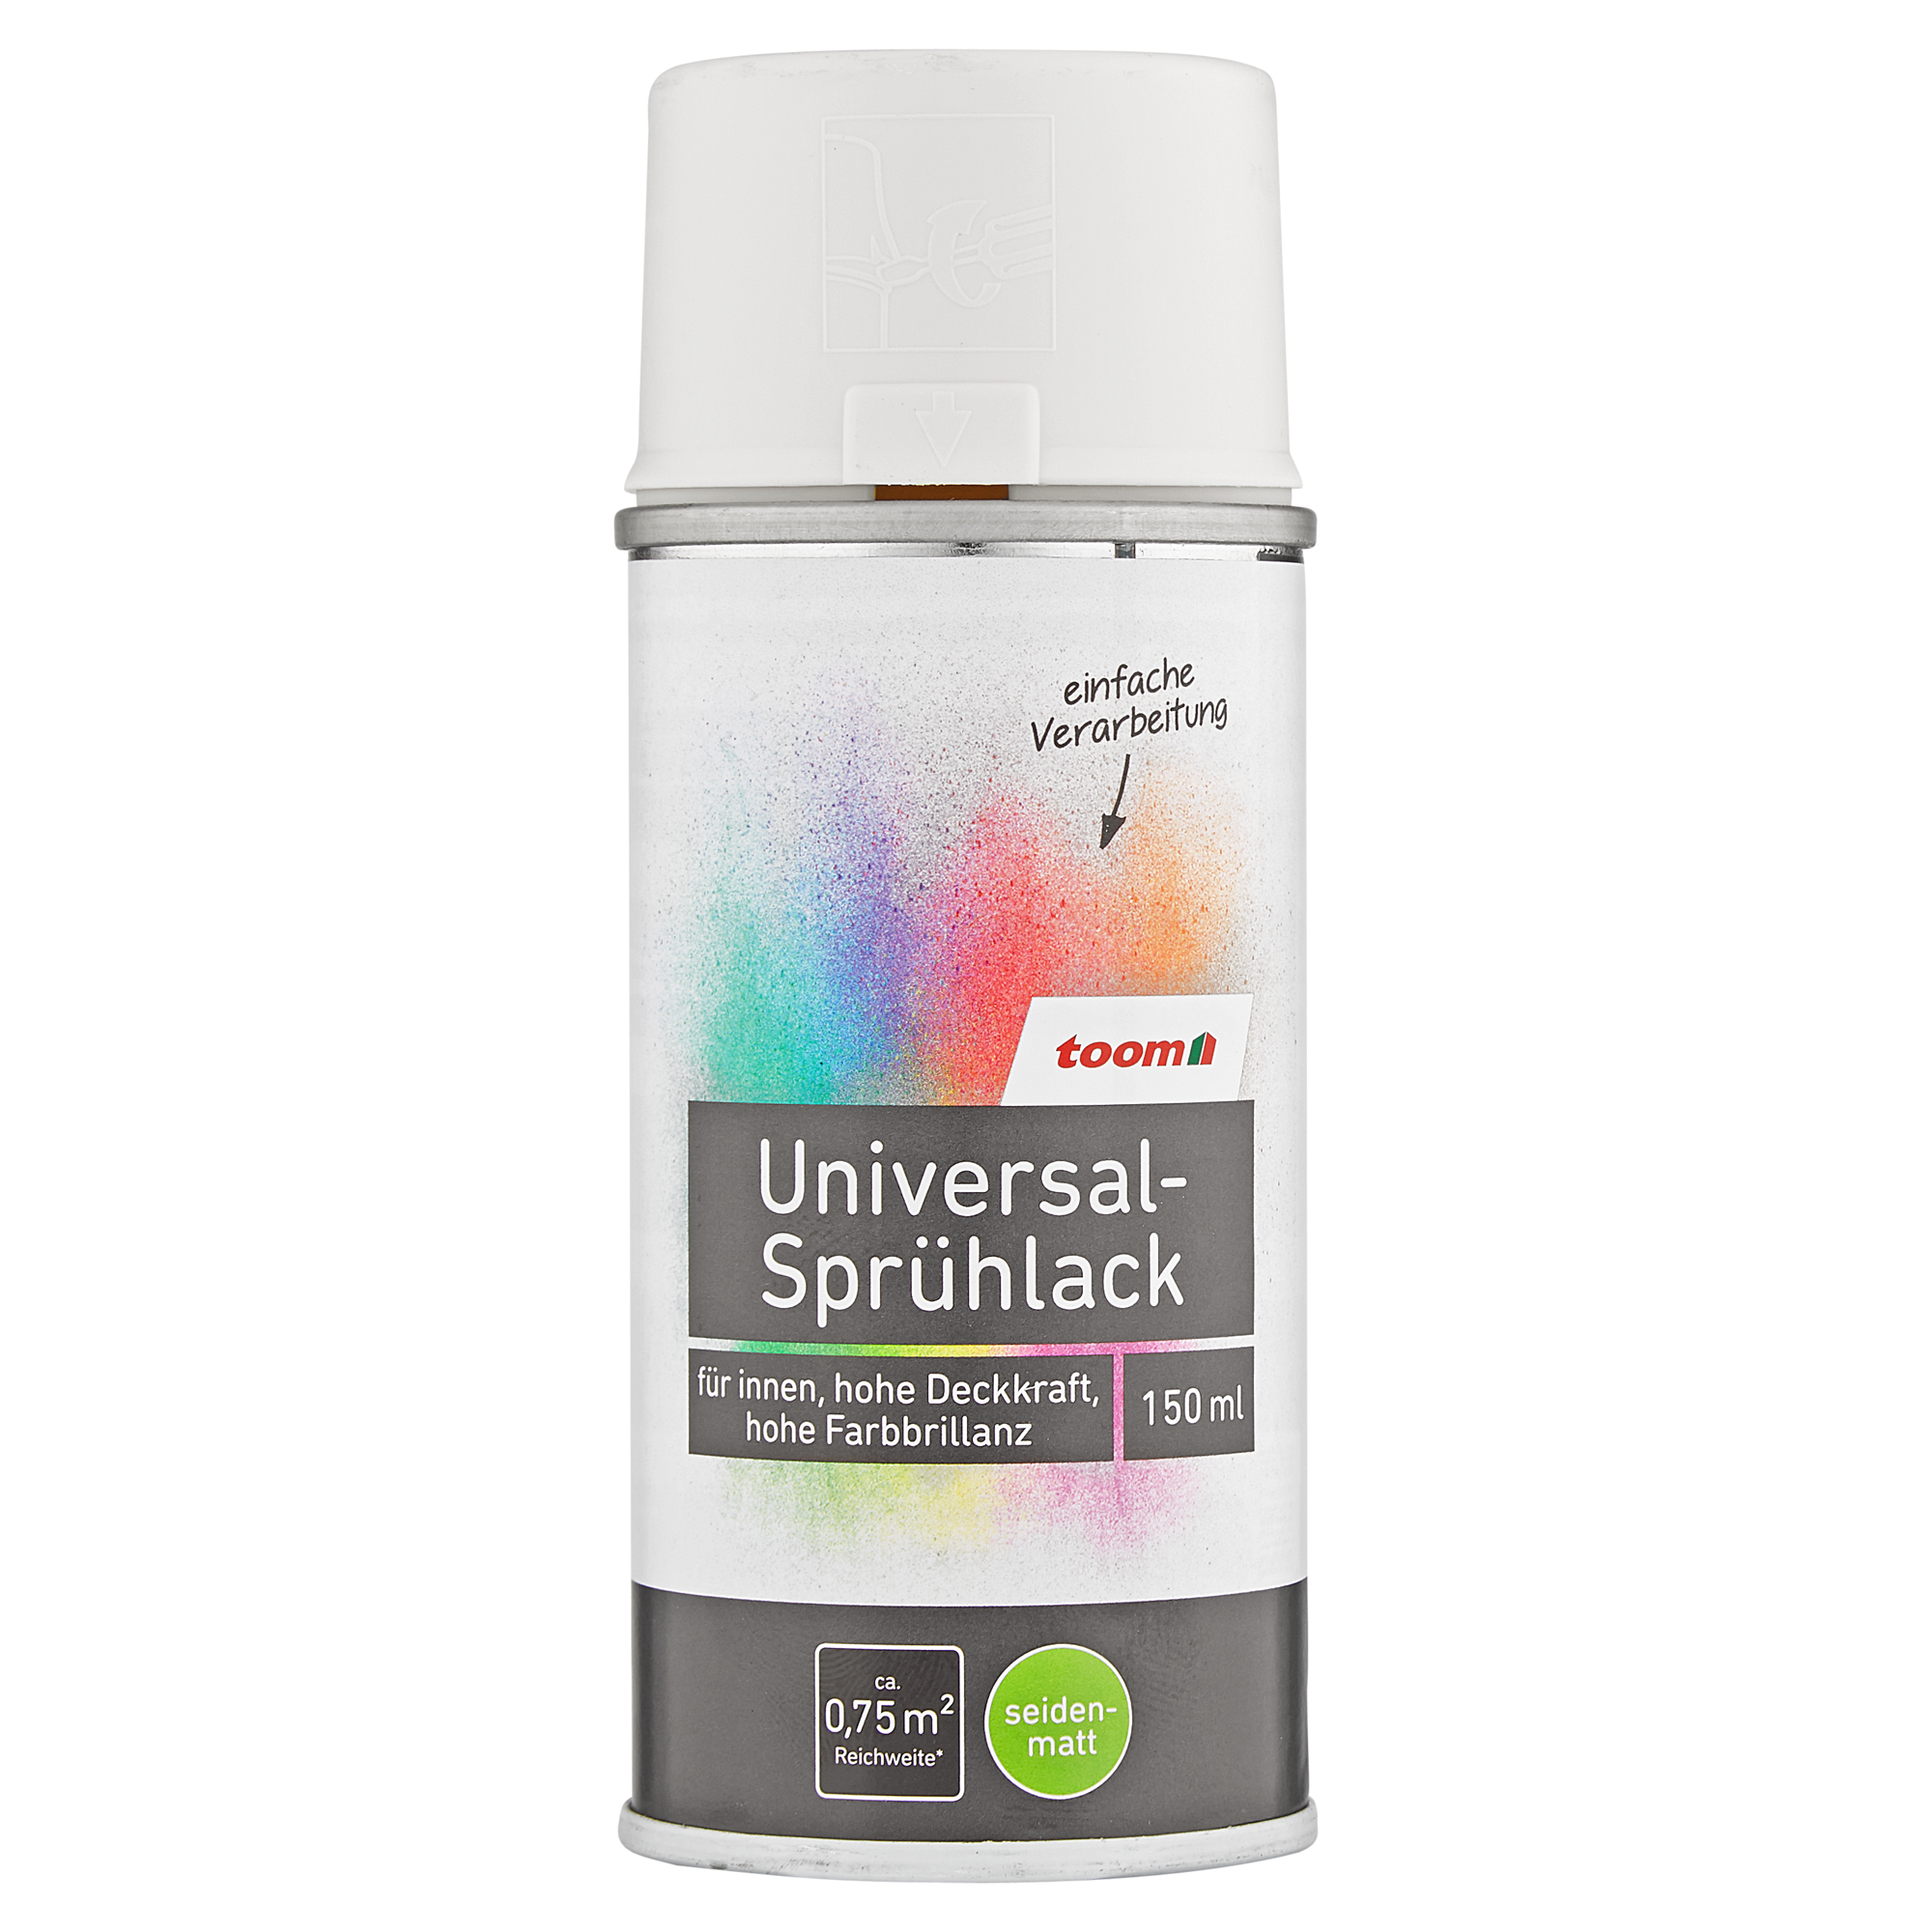 Universal-Sprühlack 'Bergkristall' cremeweiß seidenmatt 150 ml + product picture